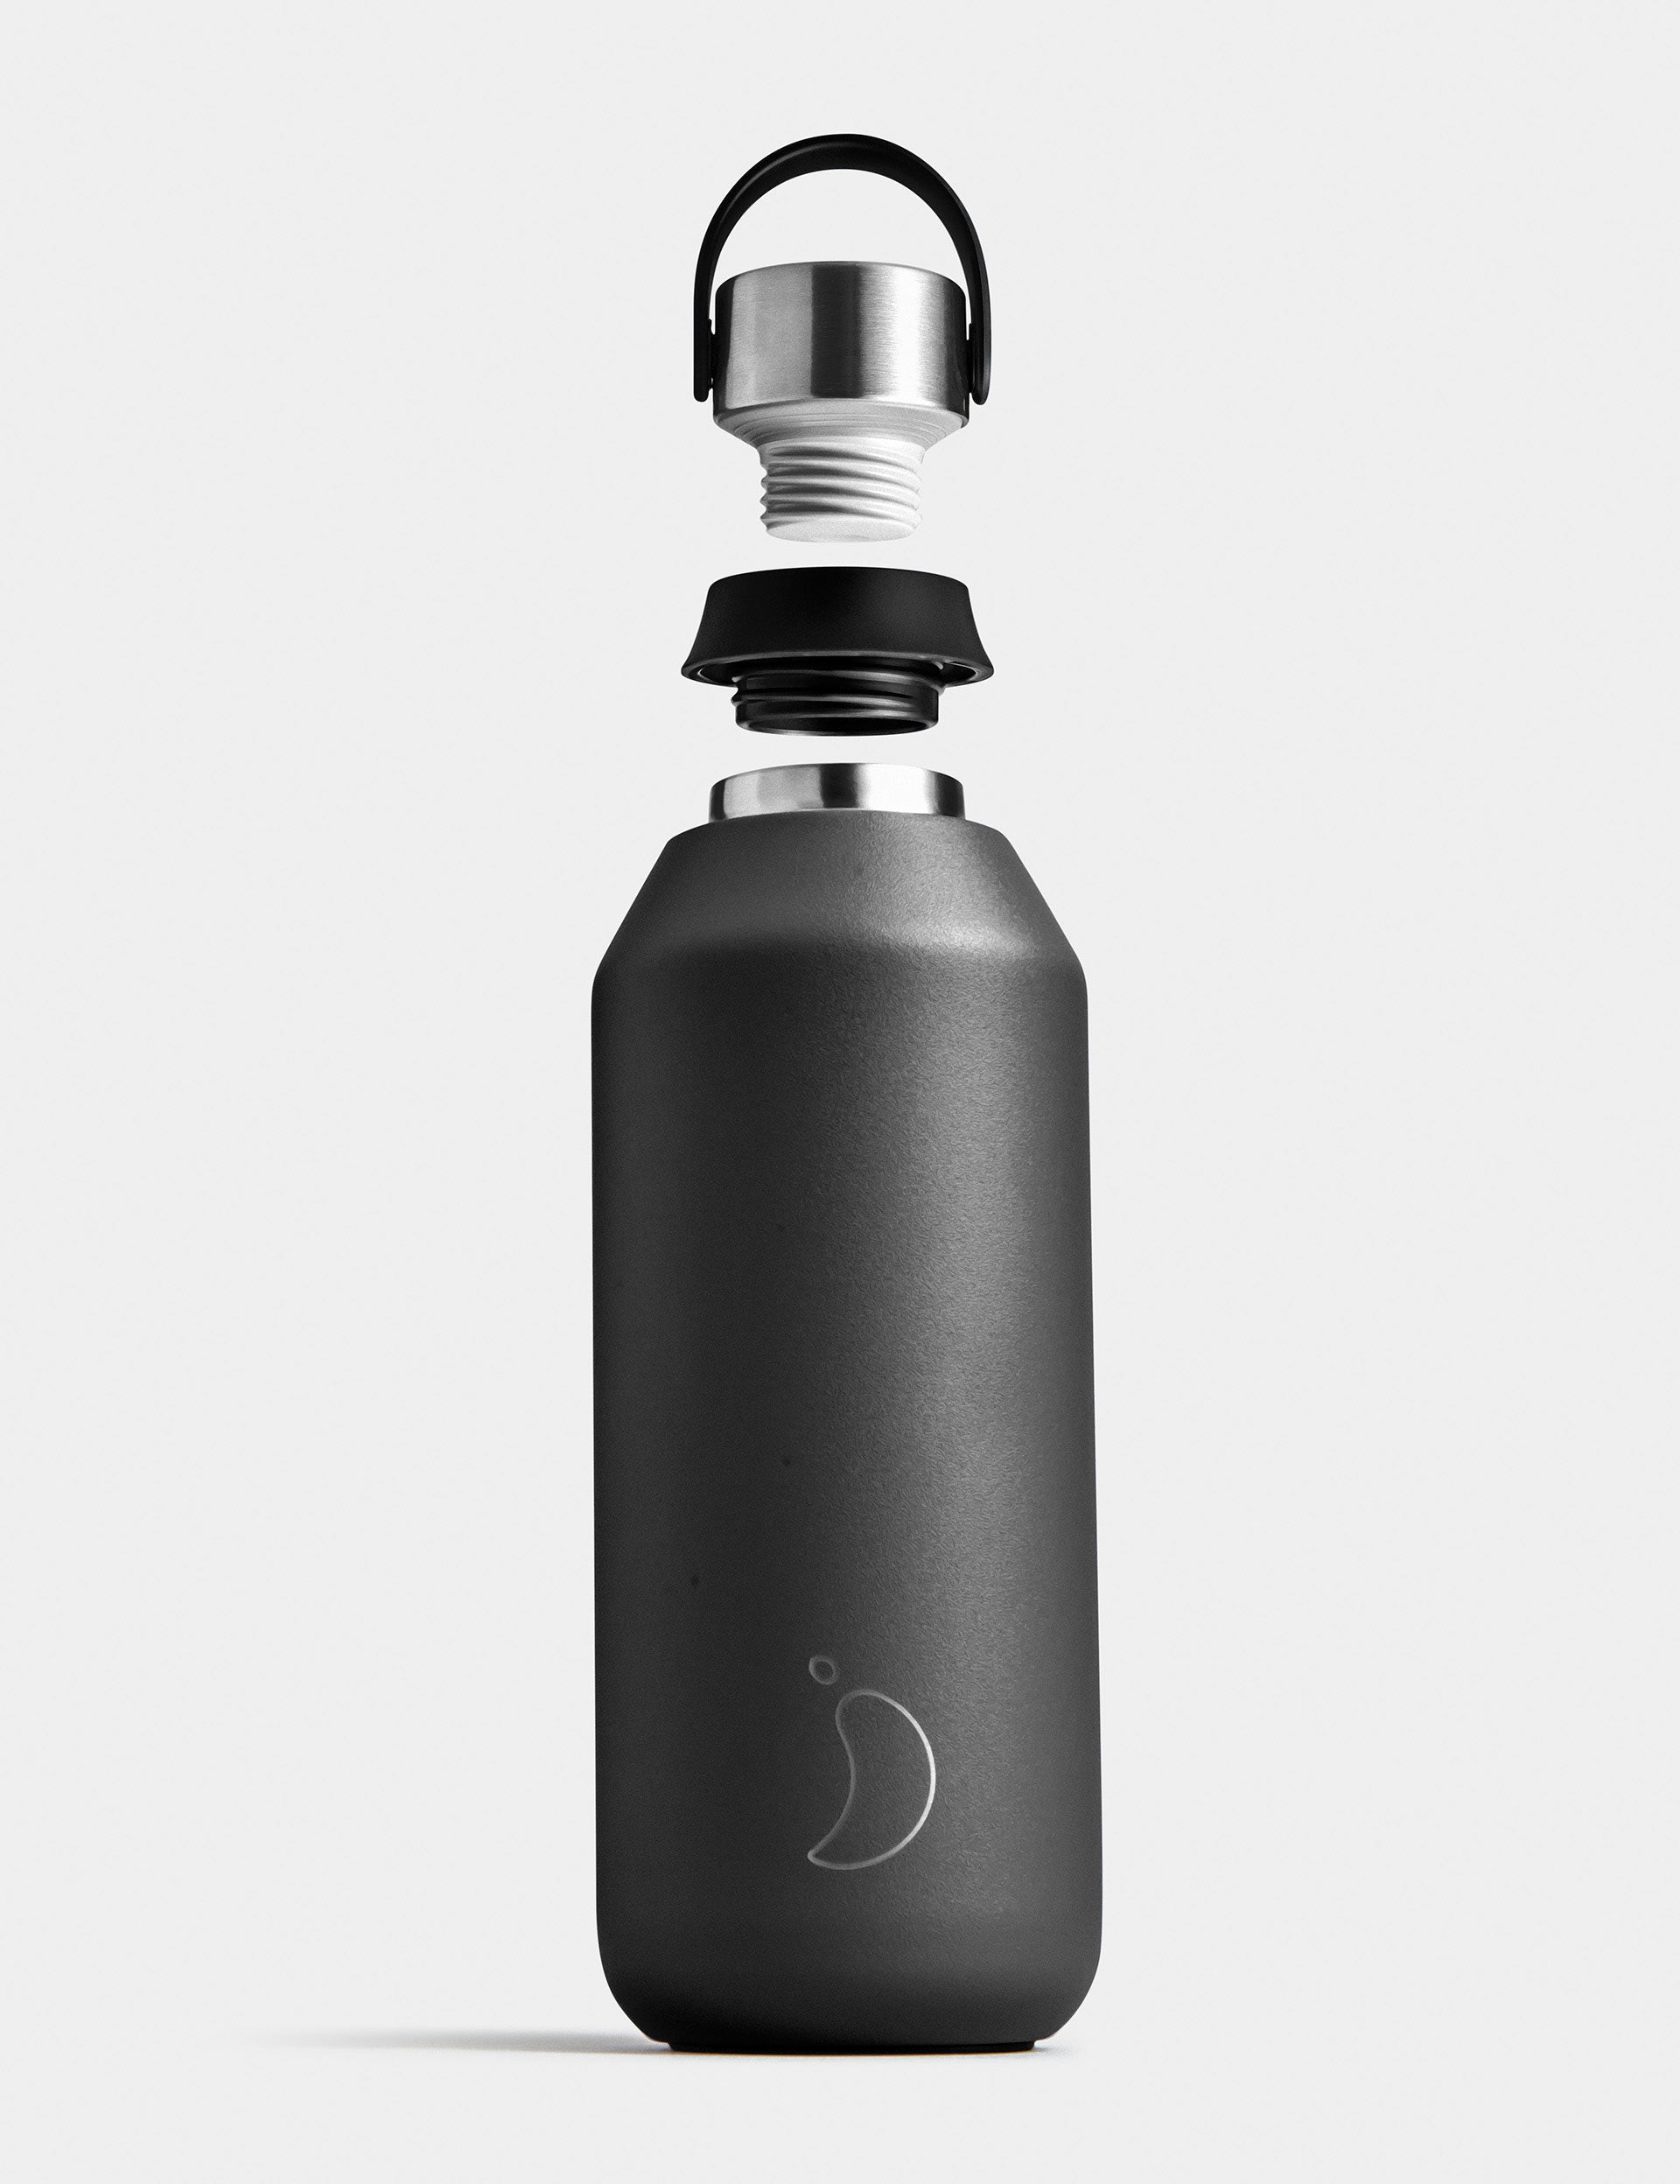 Chilly's black stainless steel bottle, branded bottles